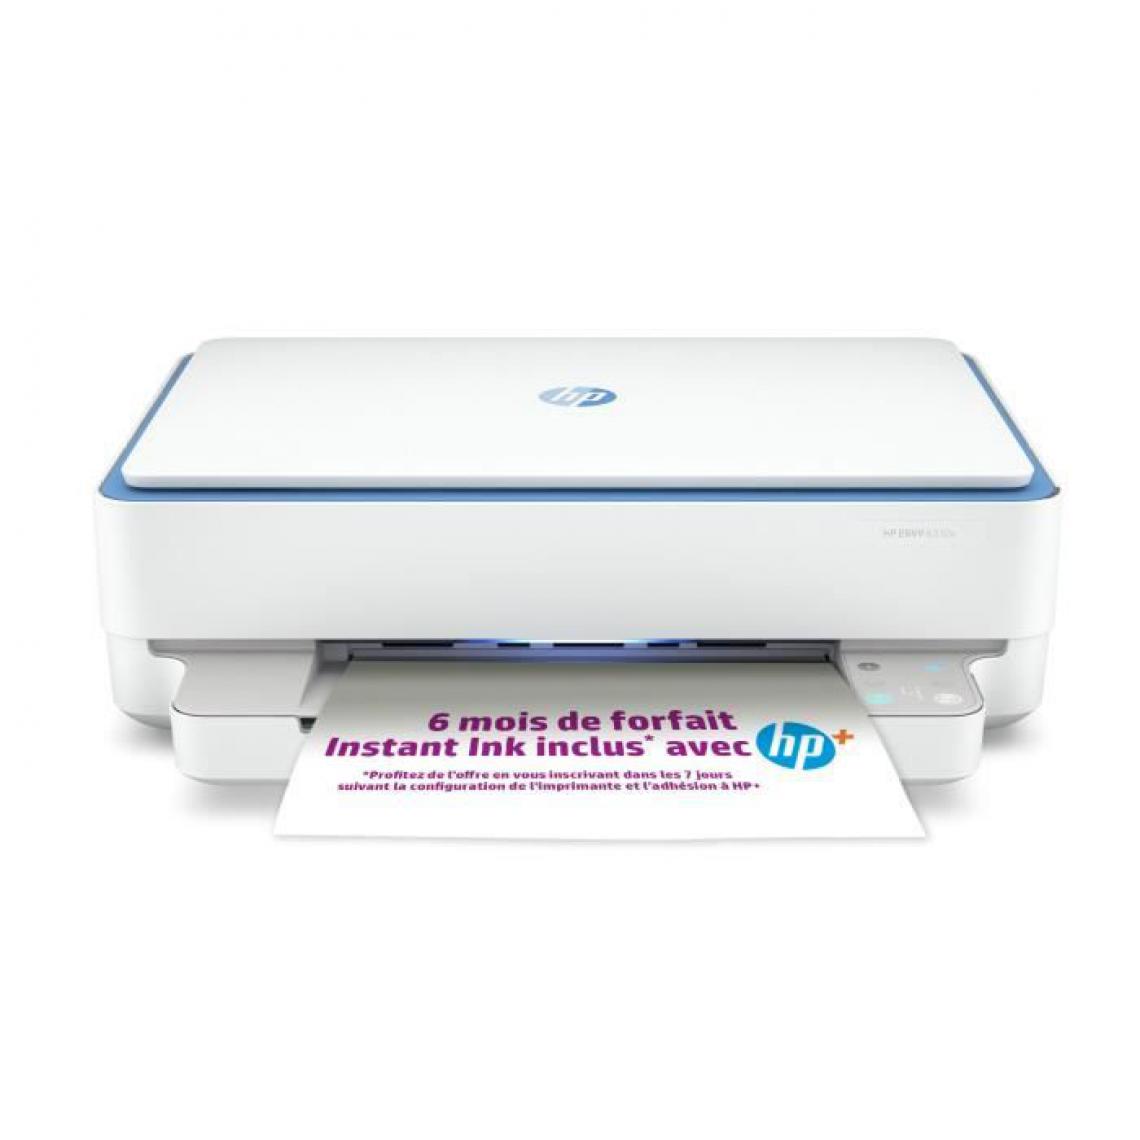 Hp - Imprimante HP tout-en-un jet d'encre couleur - Envy 6010e - Idéal pour la création - 6 mois d'Instant Ink inclus avec HP+ - Imprimante Jet d'encre